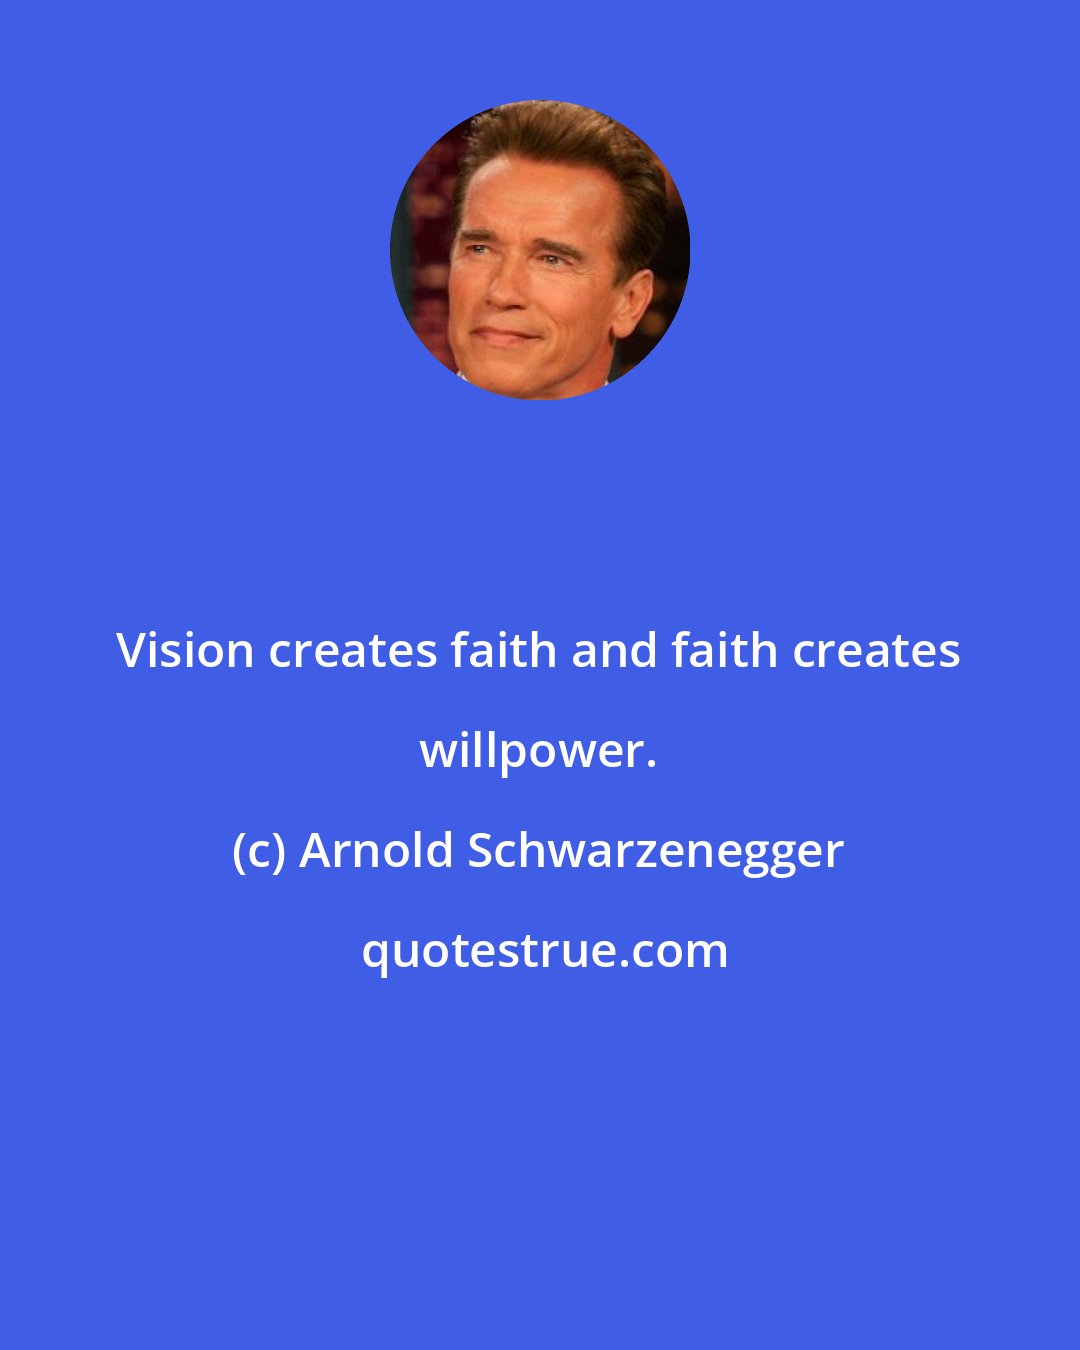 Arnold Schwarzenegger: Vision creates faith and faith creates willpower.